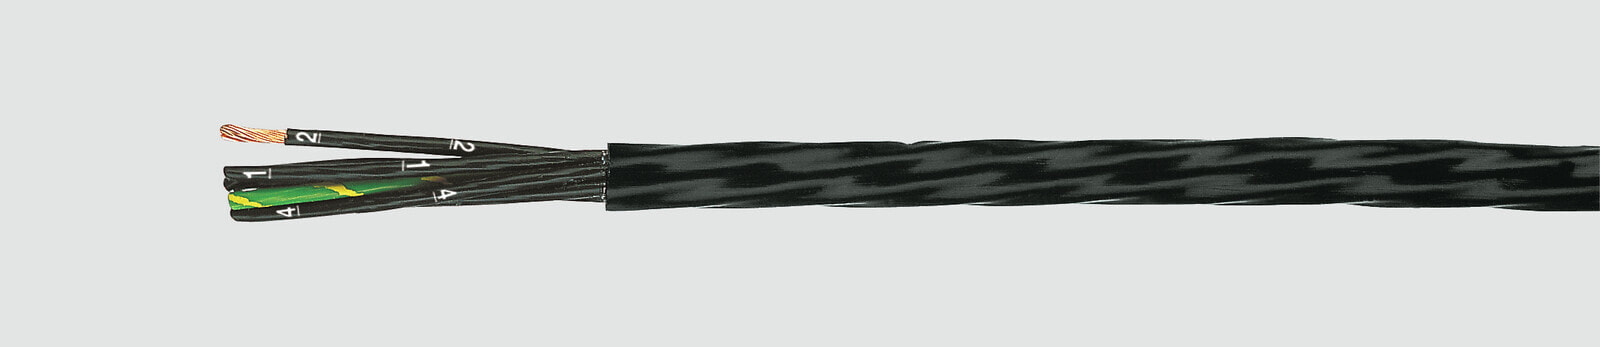 Helukabel 24558 - Low voltage cable - Black - Cooper - 0.75 mm² - 21.6 kg/km - 600 V